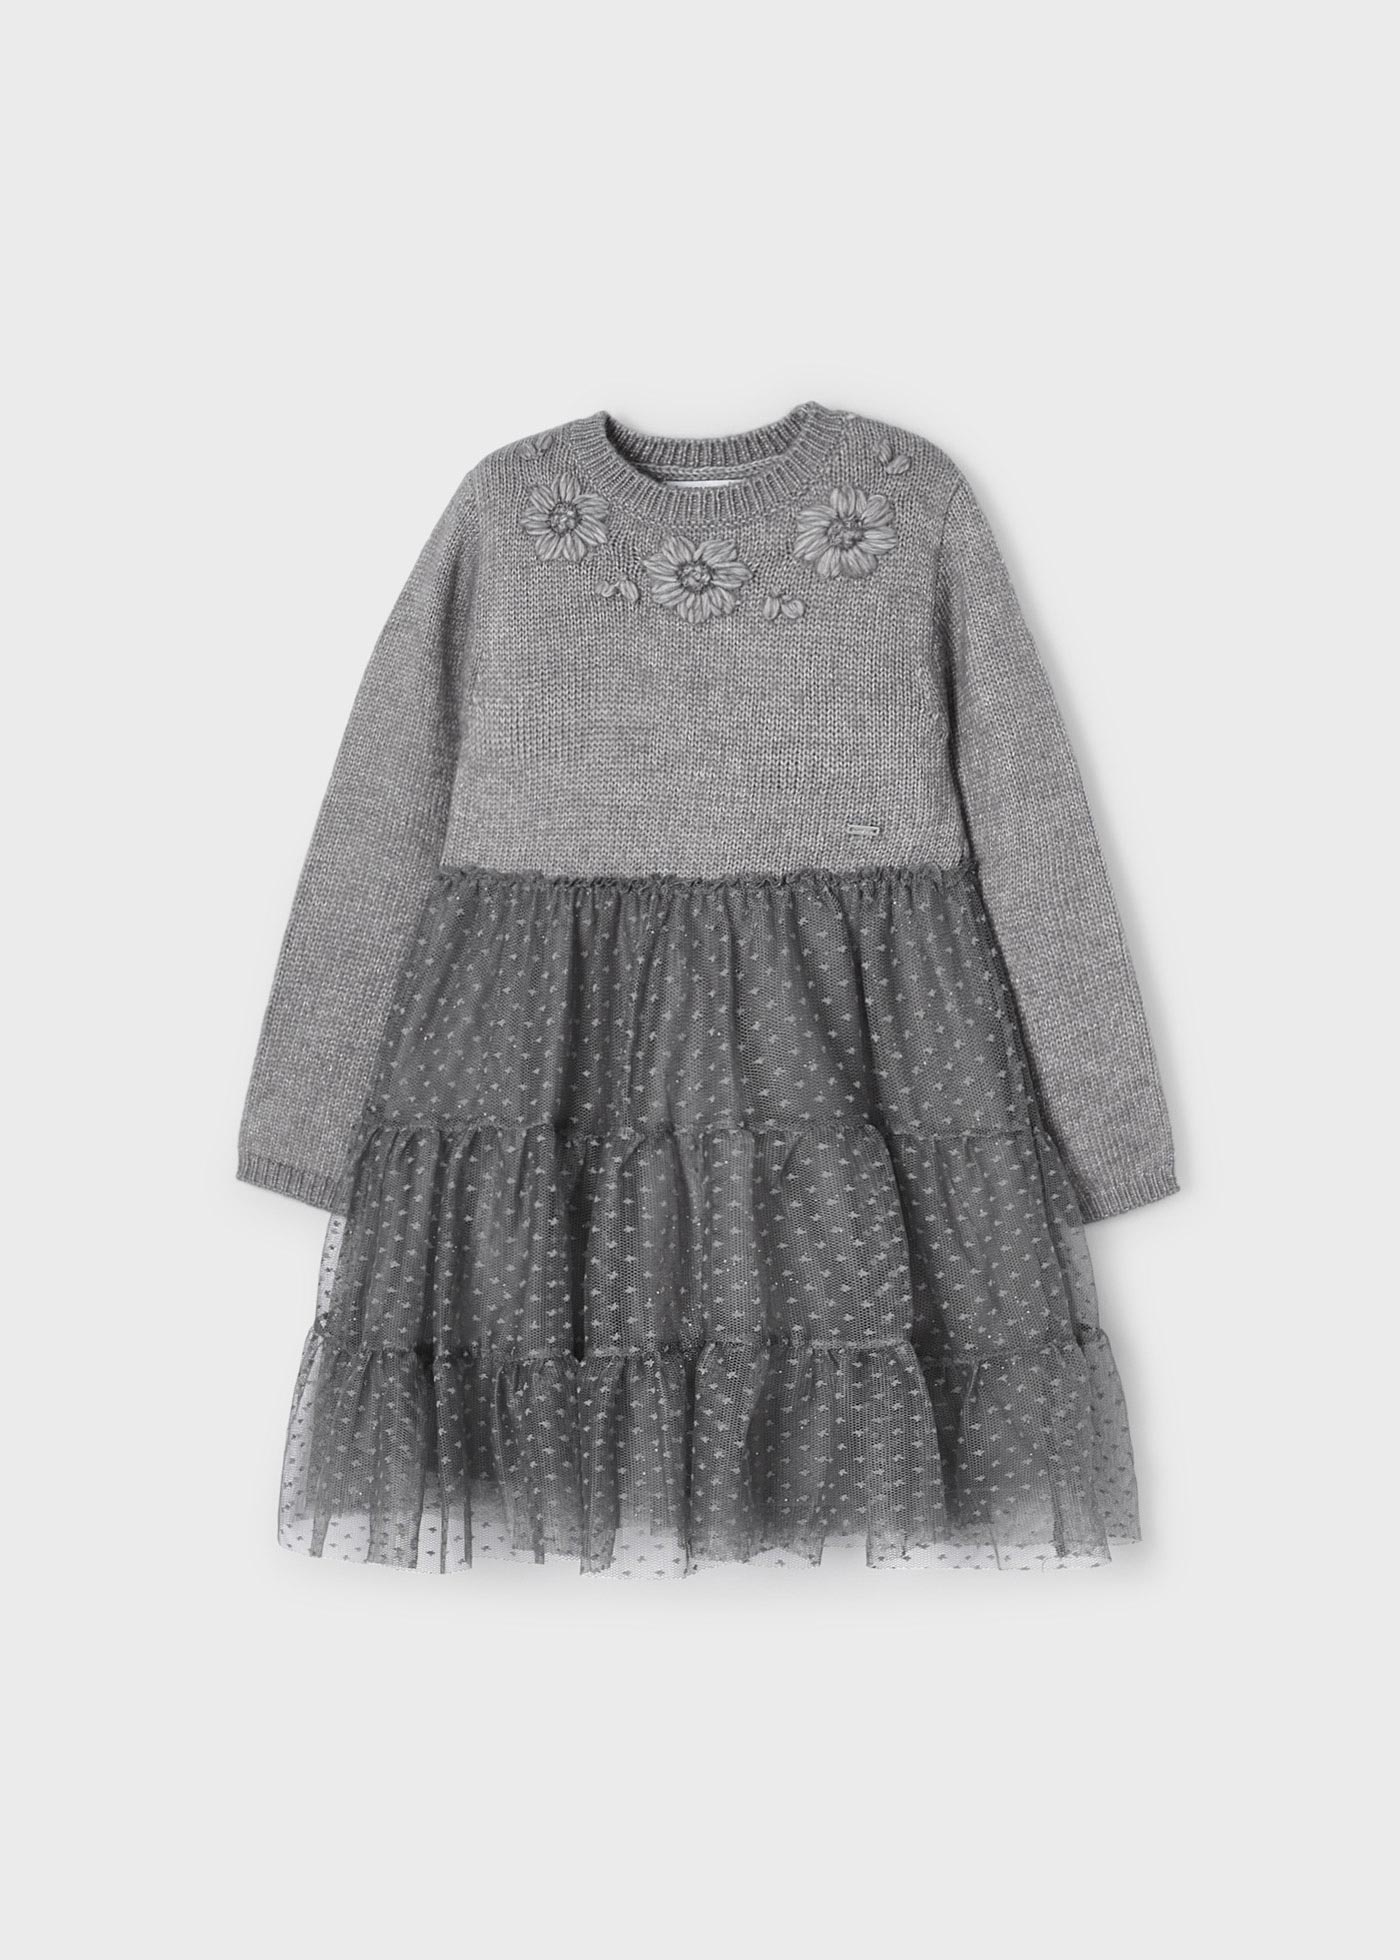 Tulle knit dress floral applique girl | Mayoral ®